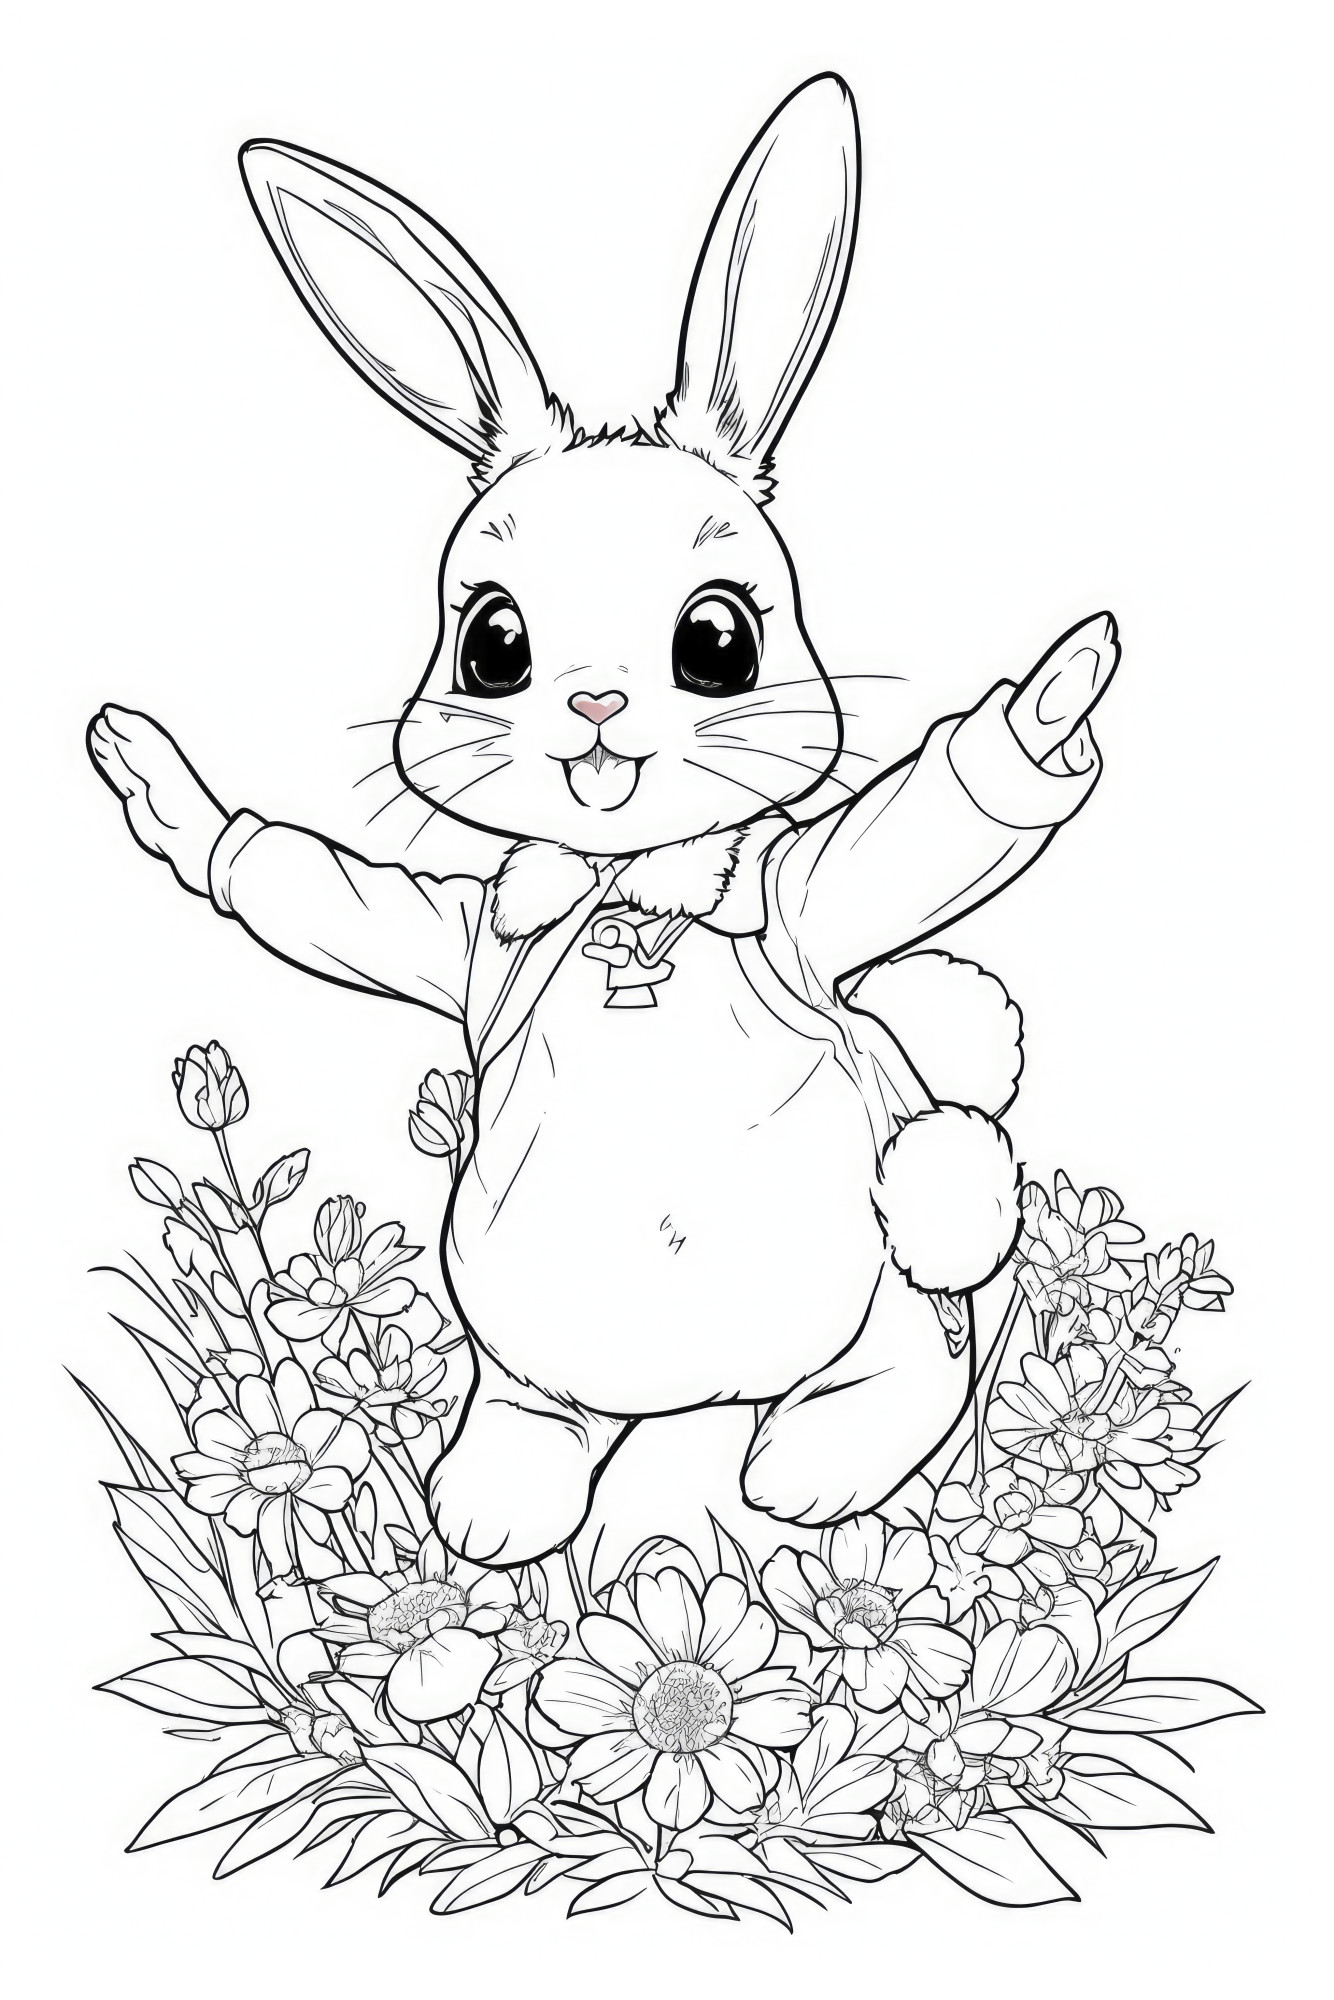 Раскраска для детей: заяц на опушке с ромашками с поднятыми лапами